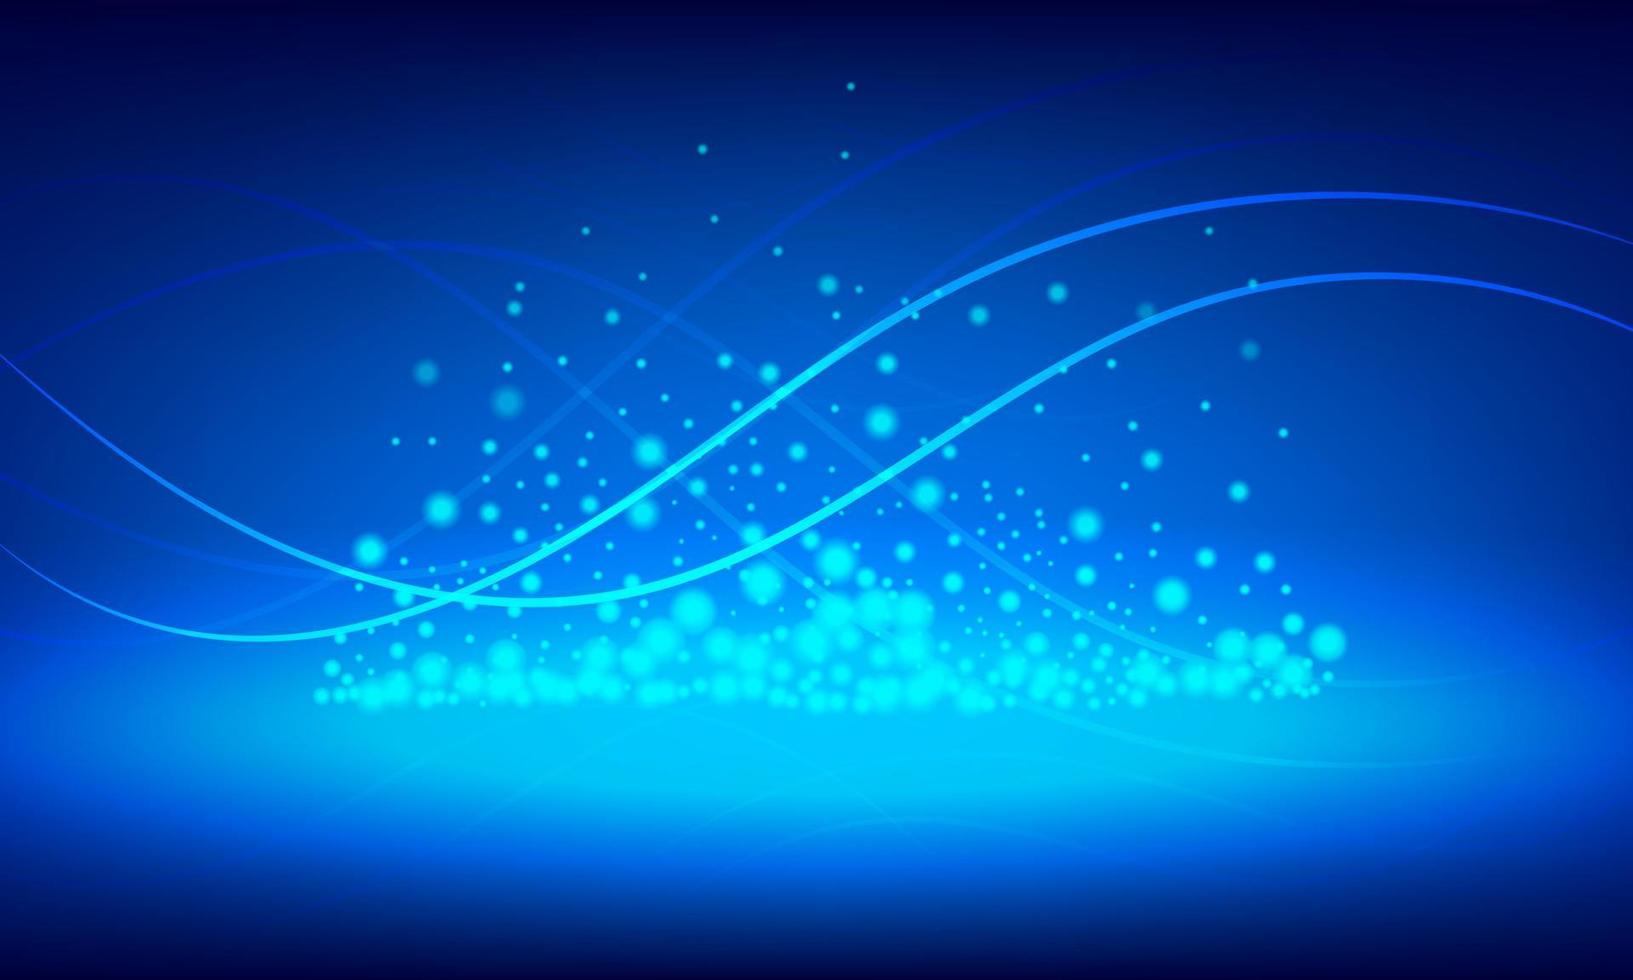 illustrazione disegno vettoriale concetto di tecnologia digitale. modello di linee ondulate incandescente con sfondo blu.